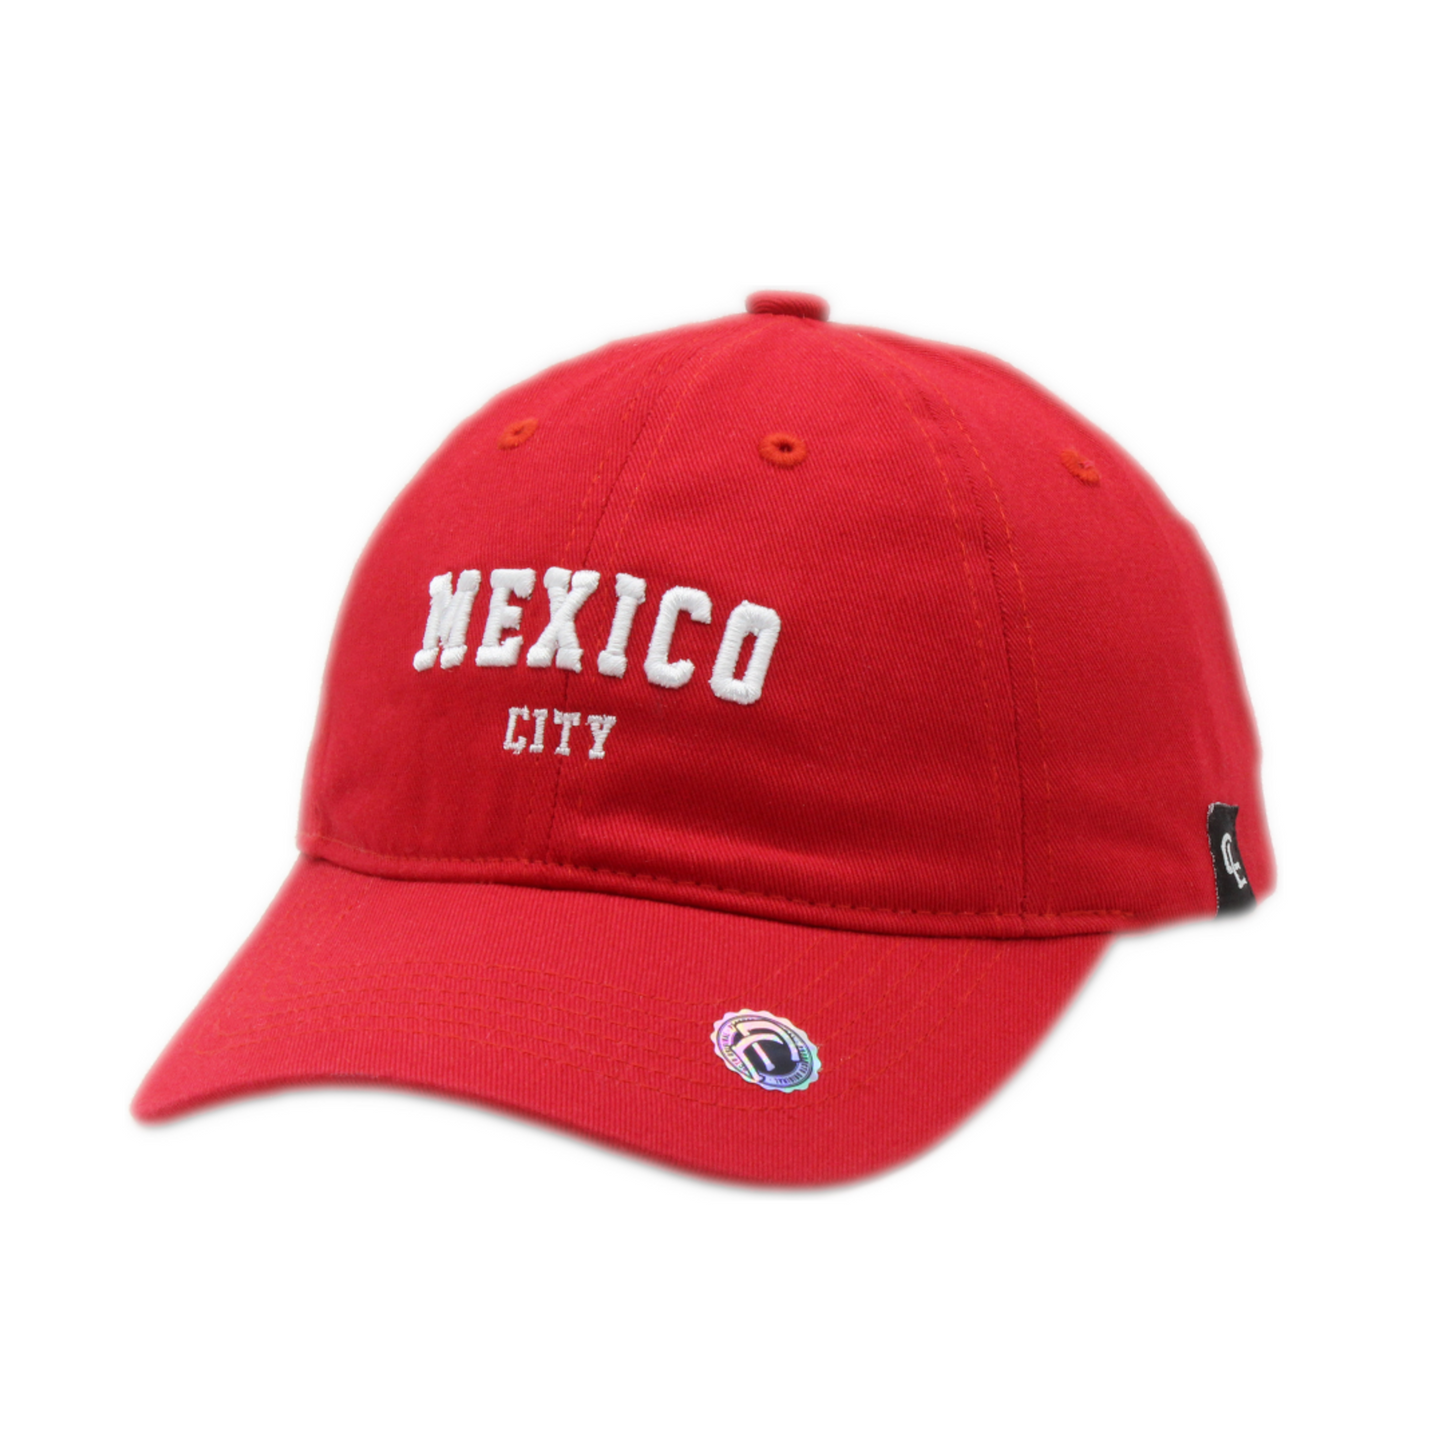 México City - Cap Land